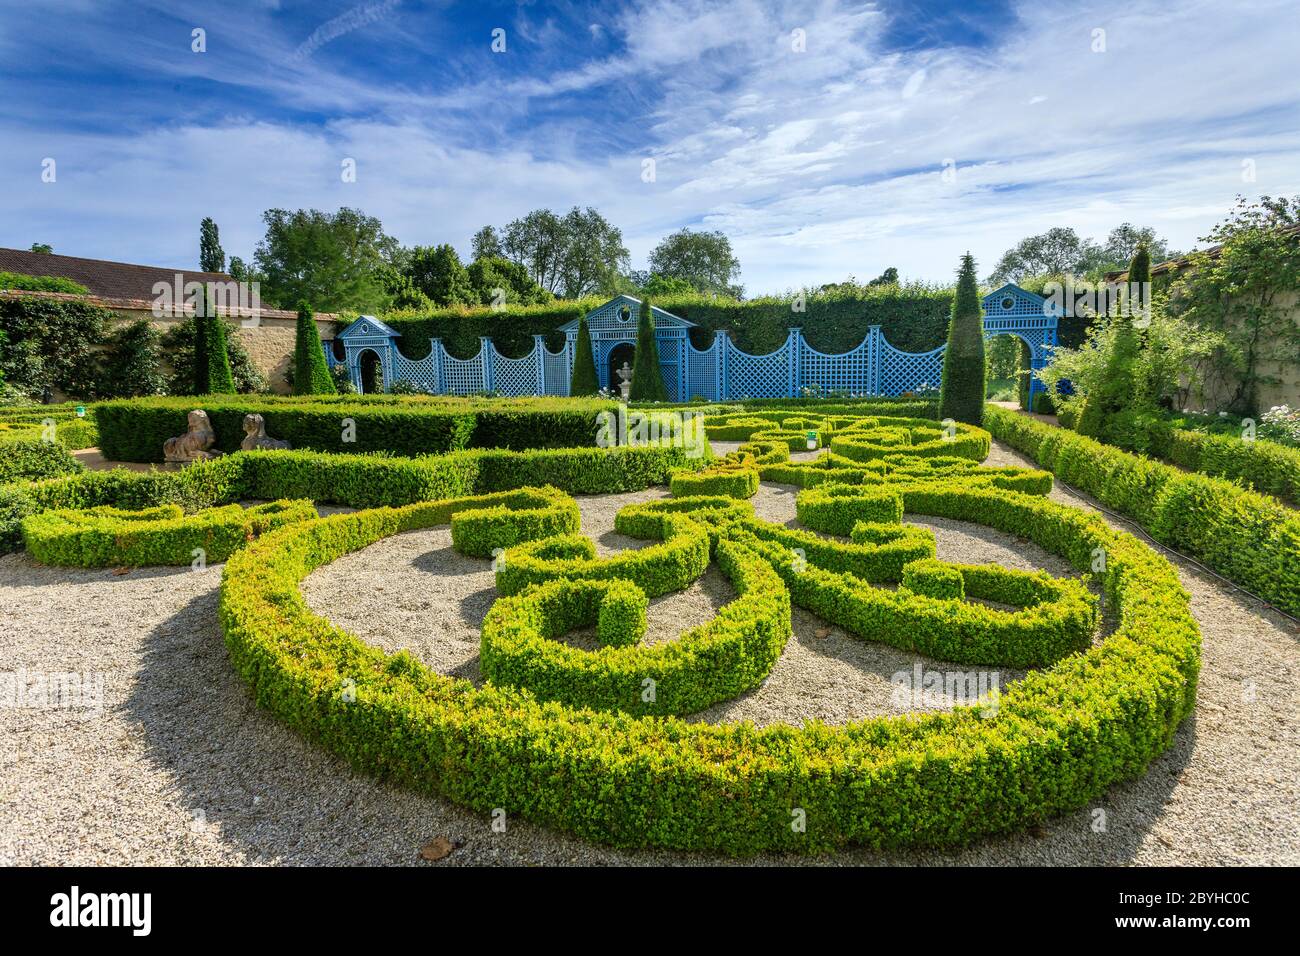 France, Cher, Berry, Route Jacques Coeur, Ainay le Vieil, Chateau d'Ainay le Vieil, castlel gardens, the Chartreuses, Parterre de broderies // France, Stock Photo